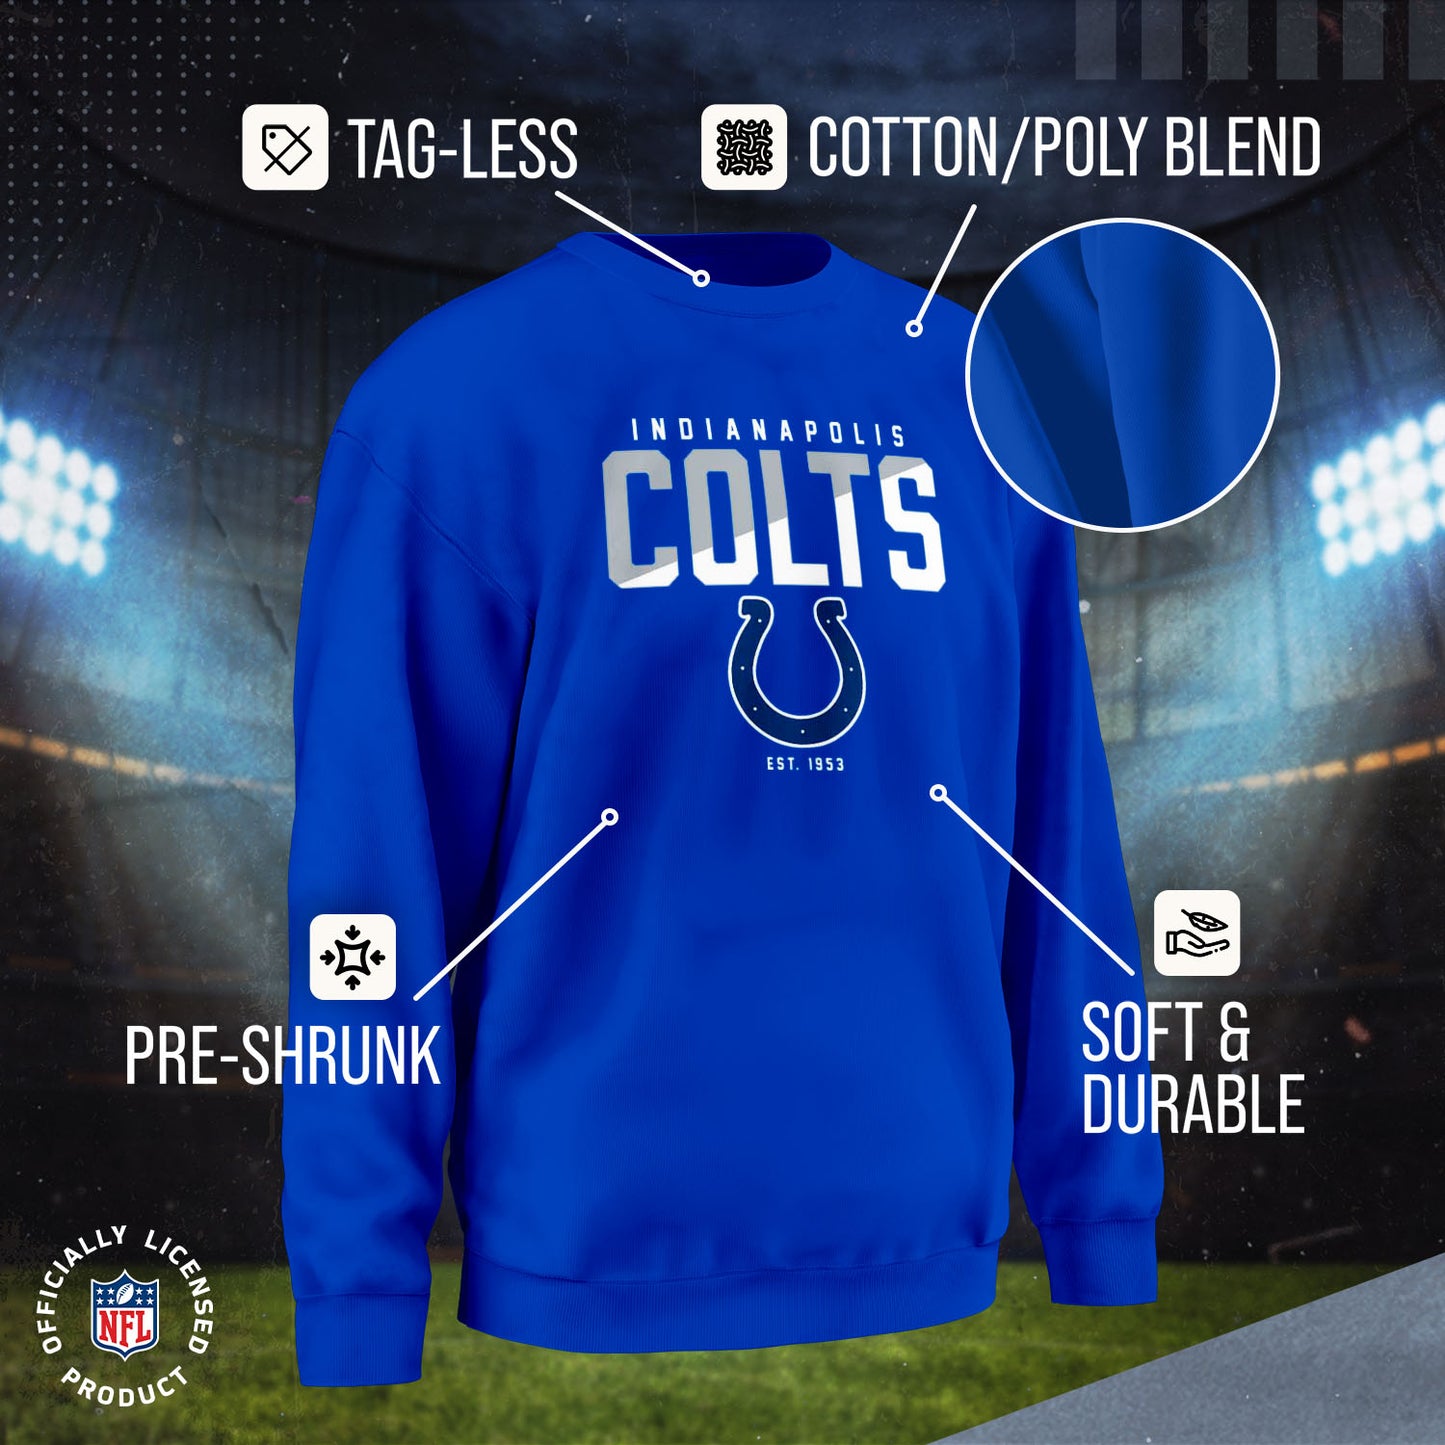 Indianapolis Colts Adult NFL Diagonal Fade Color Block Crewneck Sweatshirt - Royal